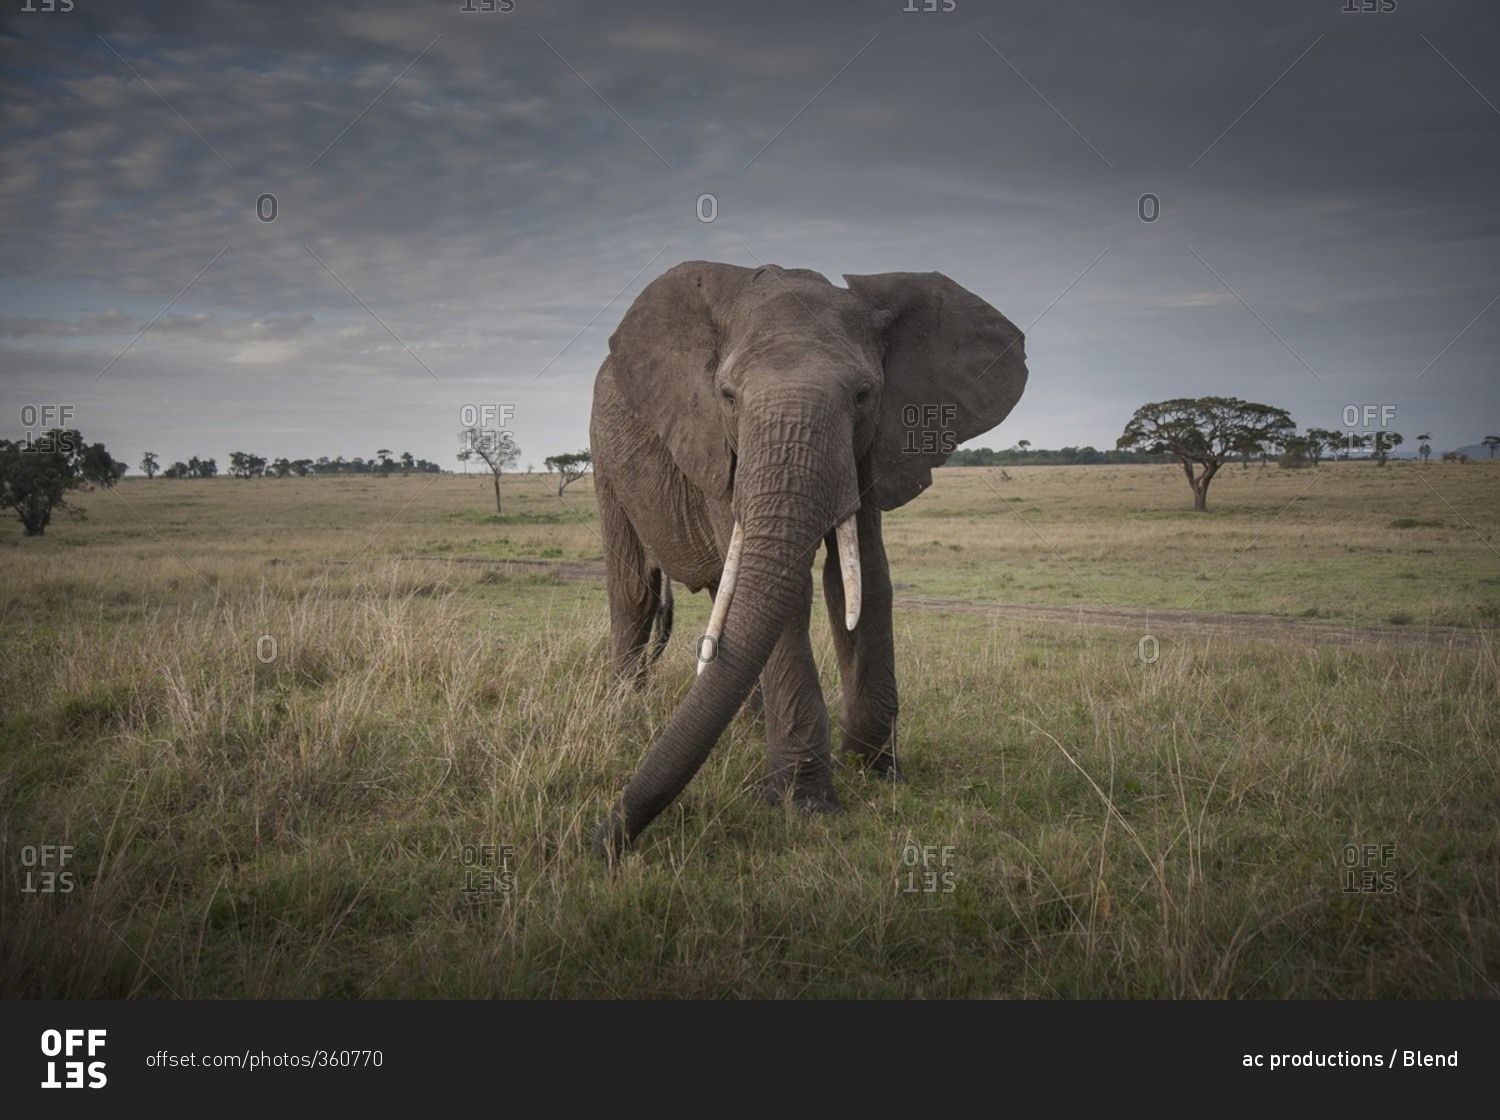 Elephant walking in savanna field